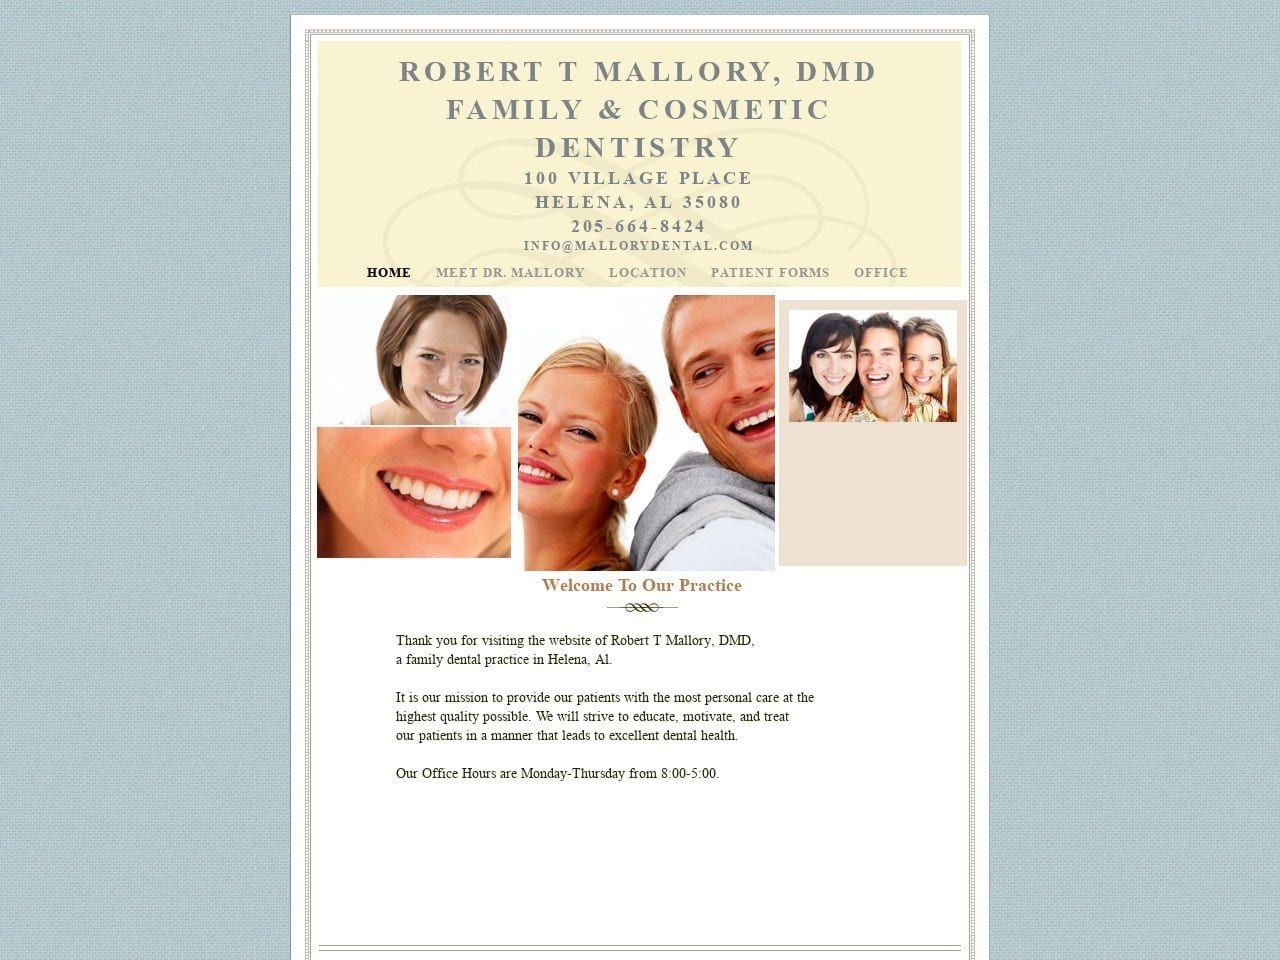 Mallory Robert T DDS Website Screenshot from mallorydental.com